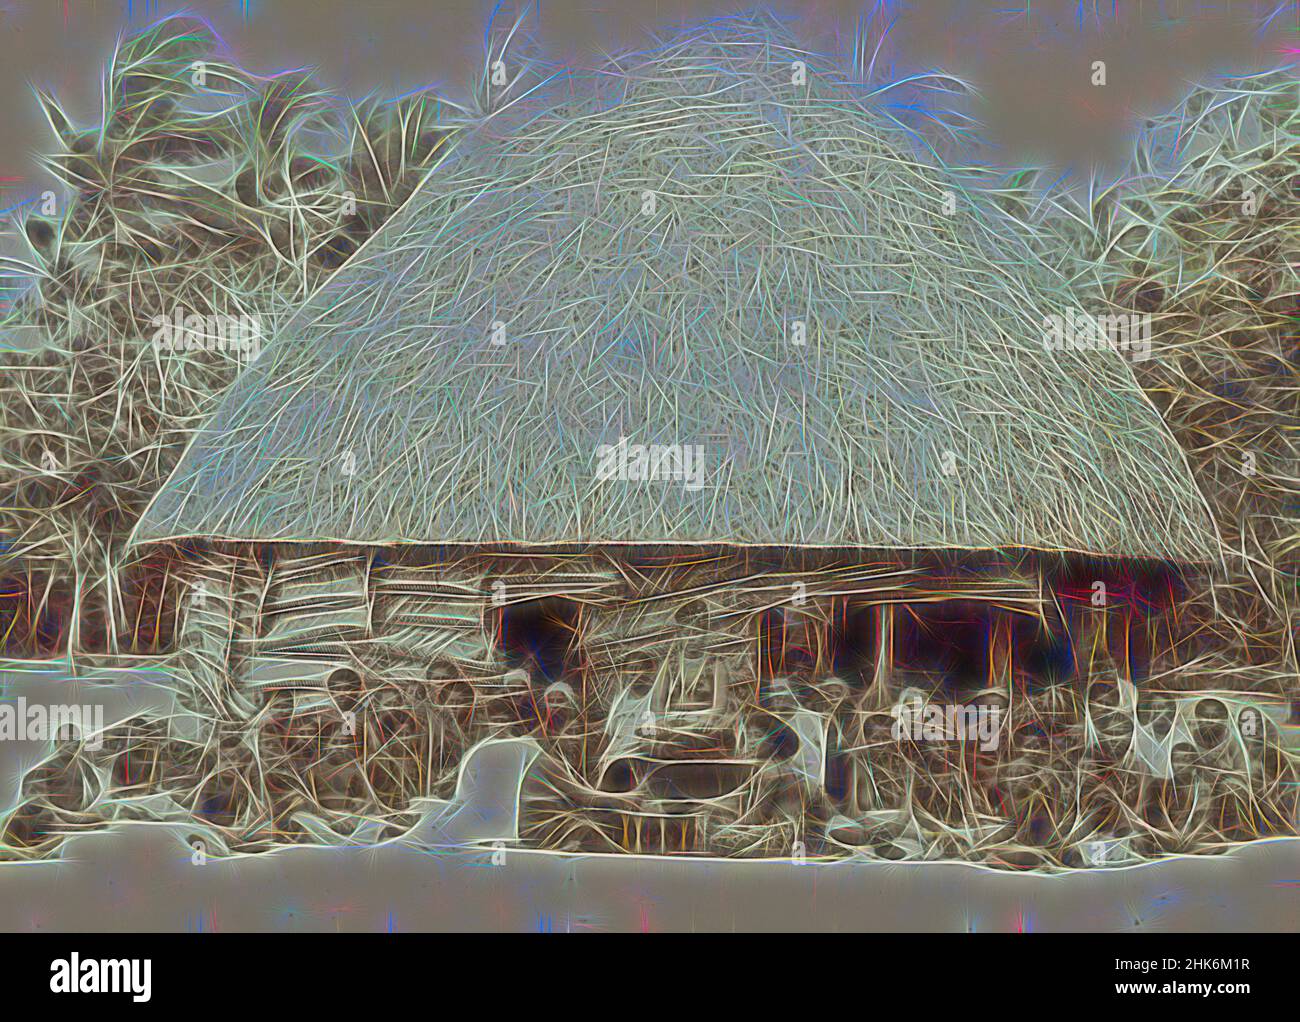 Inspiriert von Kava Making, Samoa, Muir & Moodie Studio, Fotograf, um 1890s, Dunedin, Schwarz-Weiß-Fotografie, Neu gestaltet von Artotop. Klassische Kunst neu erfunden mit einem modernen Twist. Design von warmen fröhlichen Leuchten der Helligkeit und Lichtstrahl Strahlkraft. Fotografie inspiriert von Surrealismus und Futurismus, umarmt dynamische Energie der modernen Technologie, Bewegung, Geschwindigkeit und Kultur zu revolutionieren Stockfoto